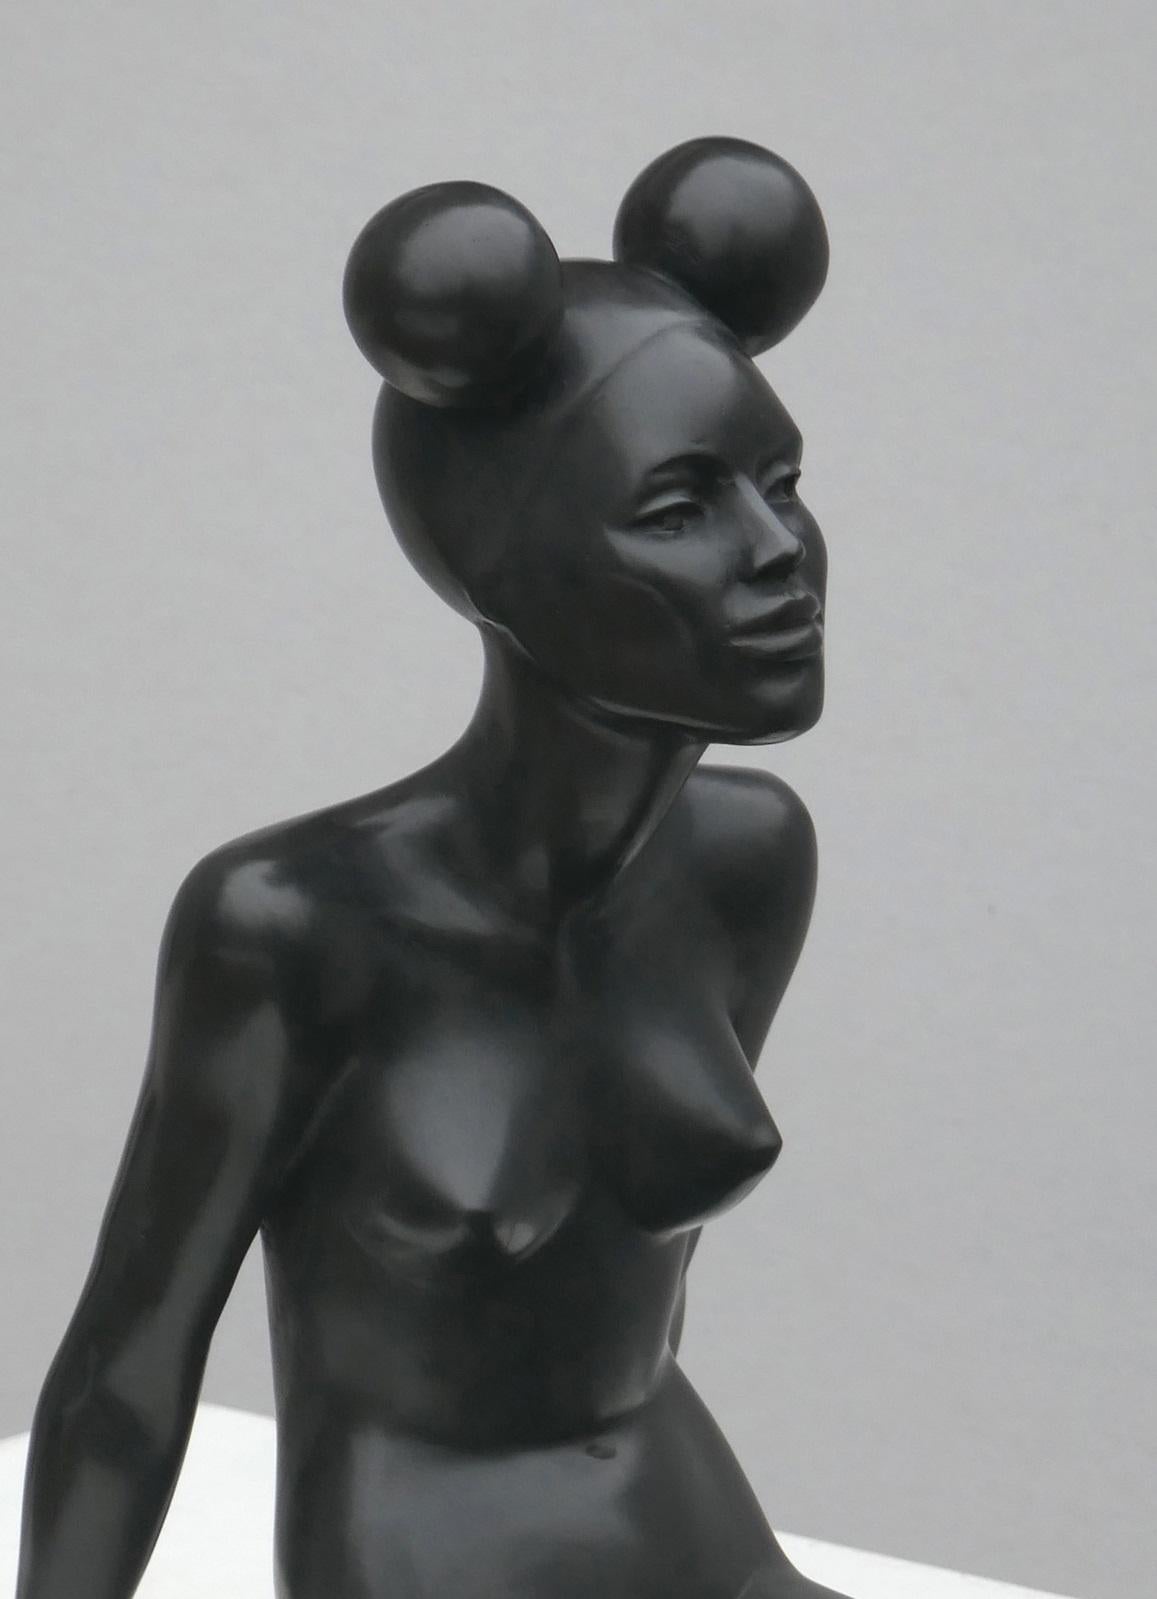 Zittend Modell I sitzendes Modell Bronze-Skulptur weiblicher nackter Mickey Mouse-Ohr – Sculpture von Erwin Meijer